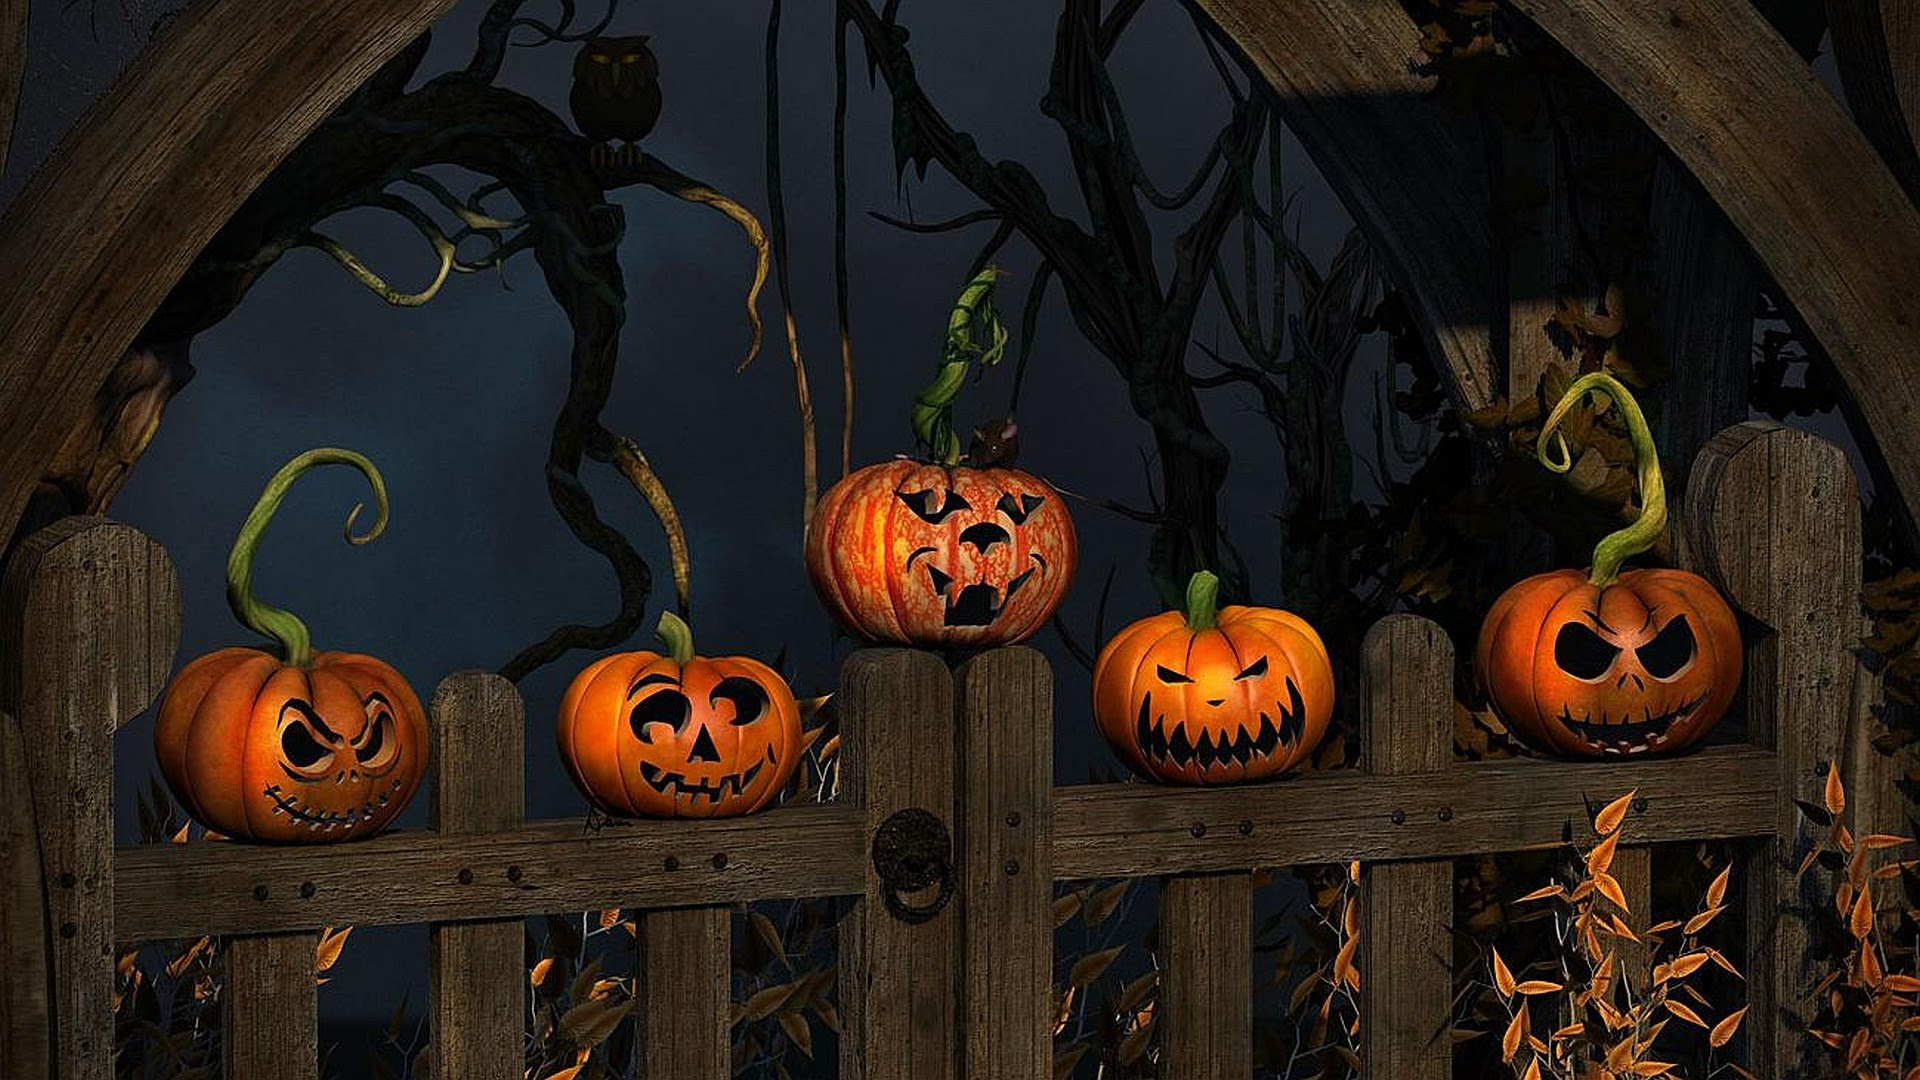 Hãy trang trí cho màn hình điện thoại của bạn với bộ sưu tập wallpaper Halloween rực rỡ và vui nhộn để tăng thêm niềm vui trong mùa Halloween tới đây! Hình ảnh sẽ khiến bạn choáng ngợp với những hình ảnh rực rỡ và đầy sắc màu.